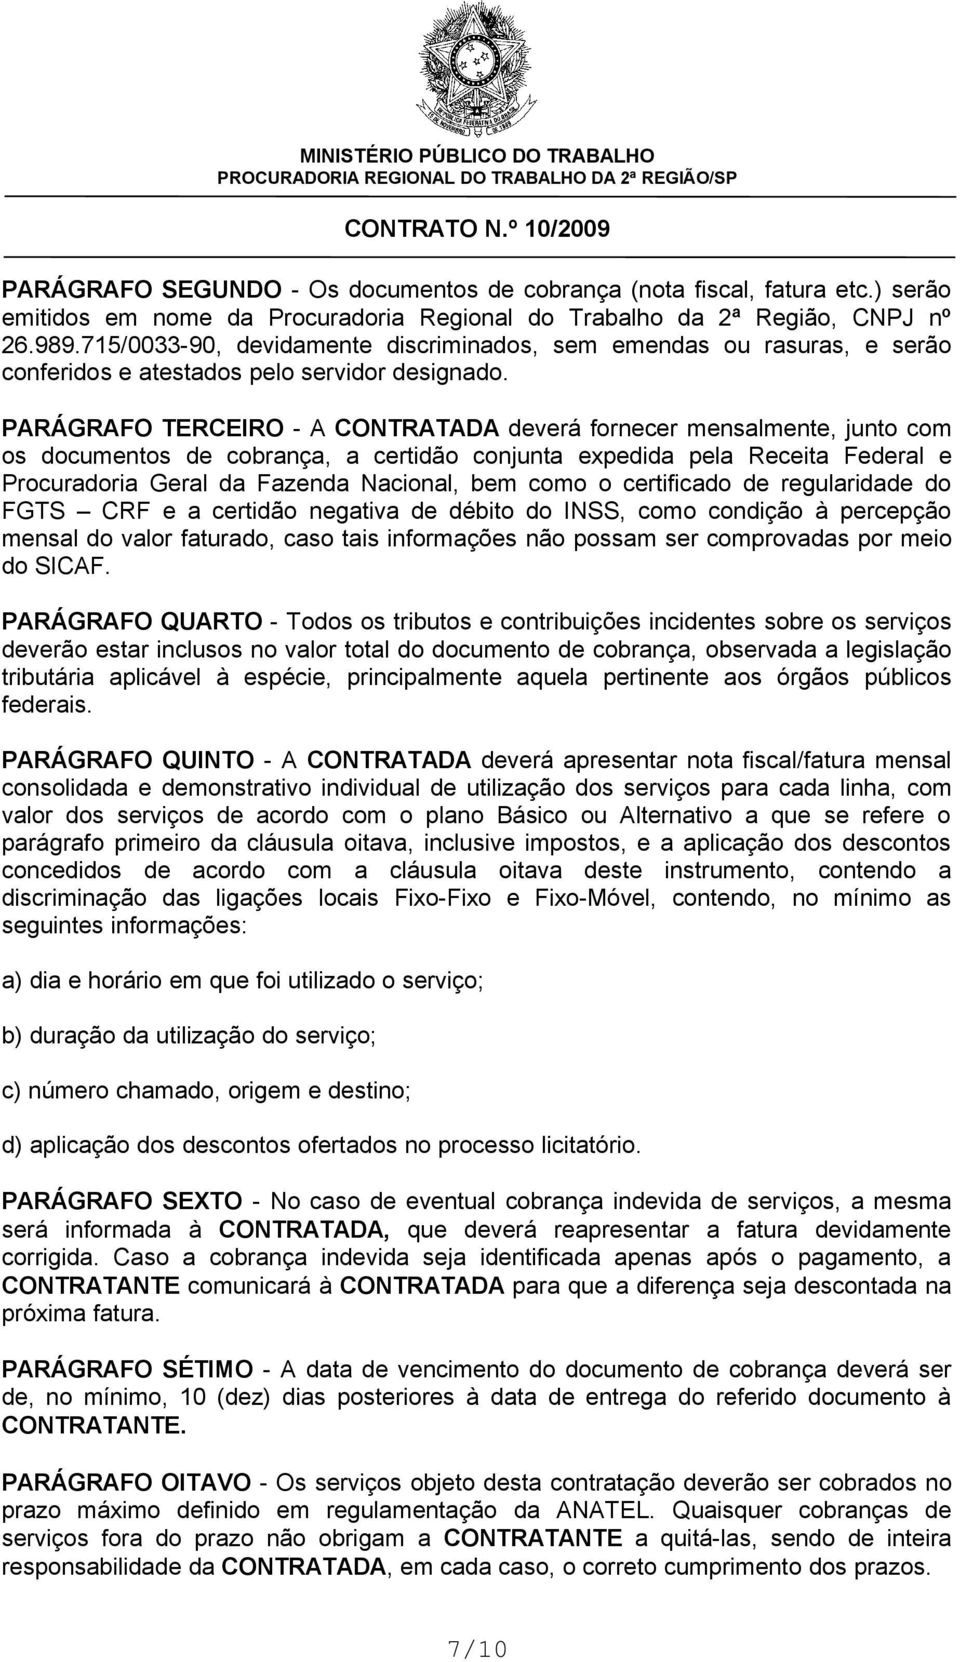 PARÁGRAFO TERCEIRO - A CONTRATADA deverá fornecer mensalmente, junto com os documentos de cobrança, a certidão conjunta expedida pela Receita Federal e Procuradoria Geral da Fazenda Nacional, bem